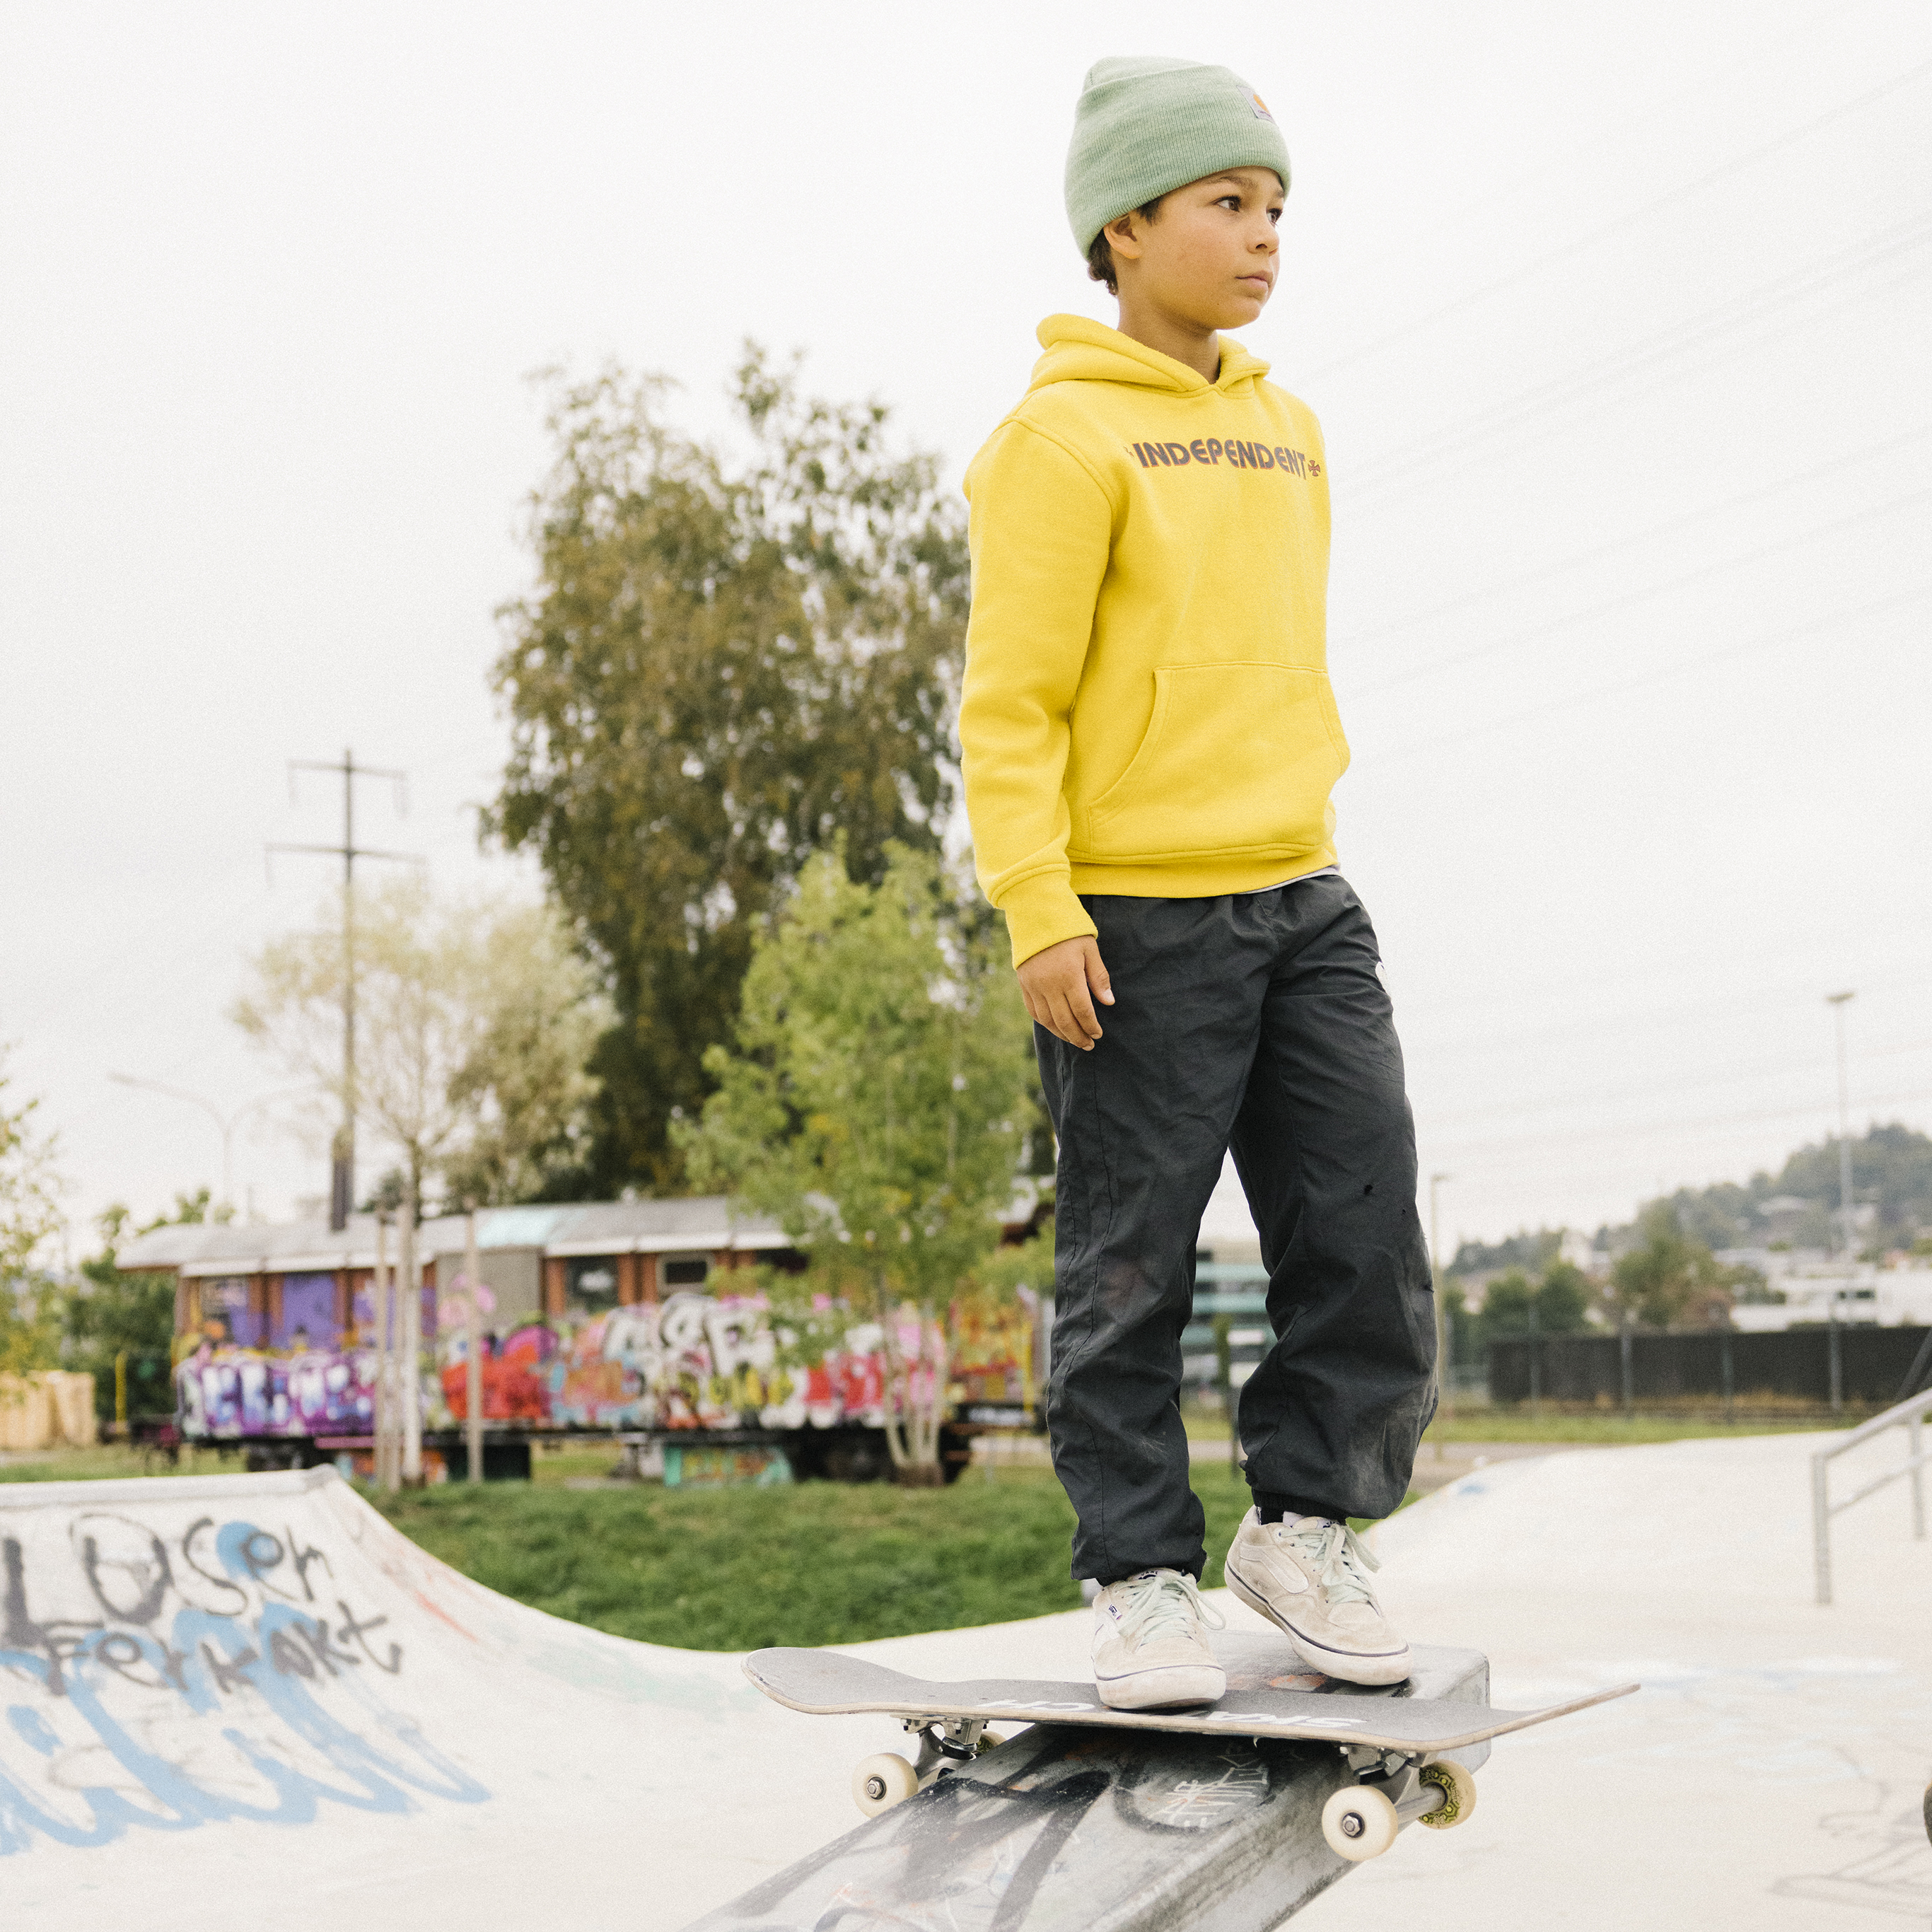 Un adolescent debout sur son skateboard se tient sur une barre de grind et regarde au loin, sûr de lui.